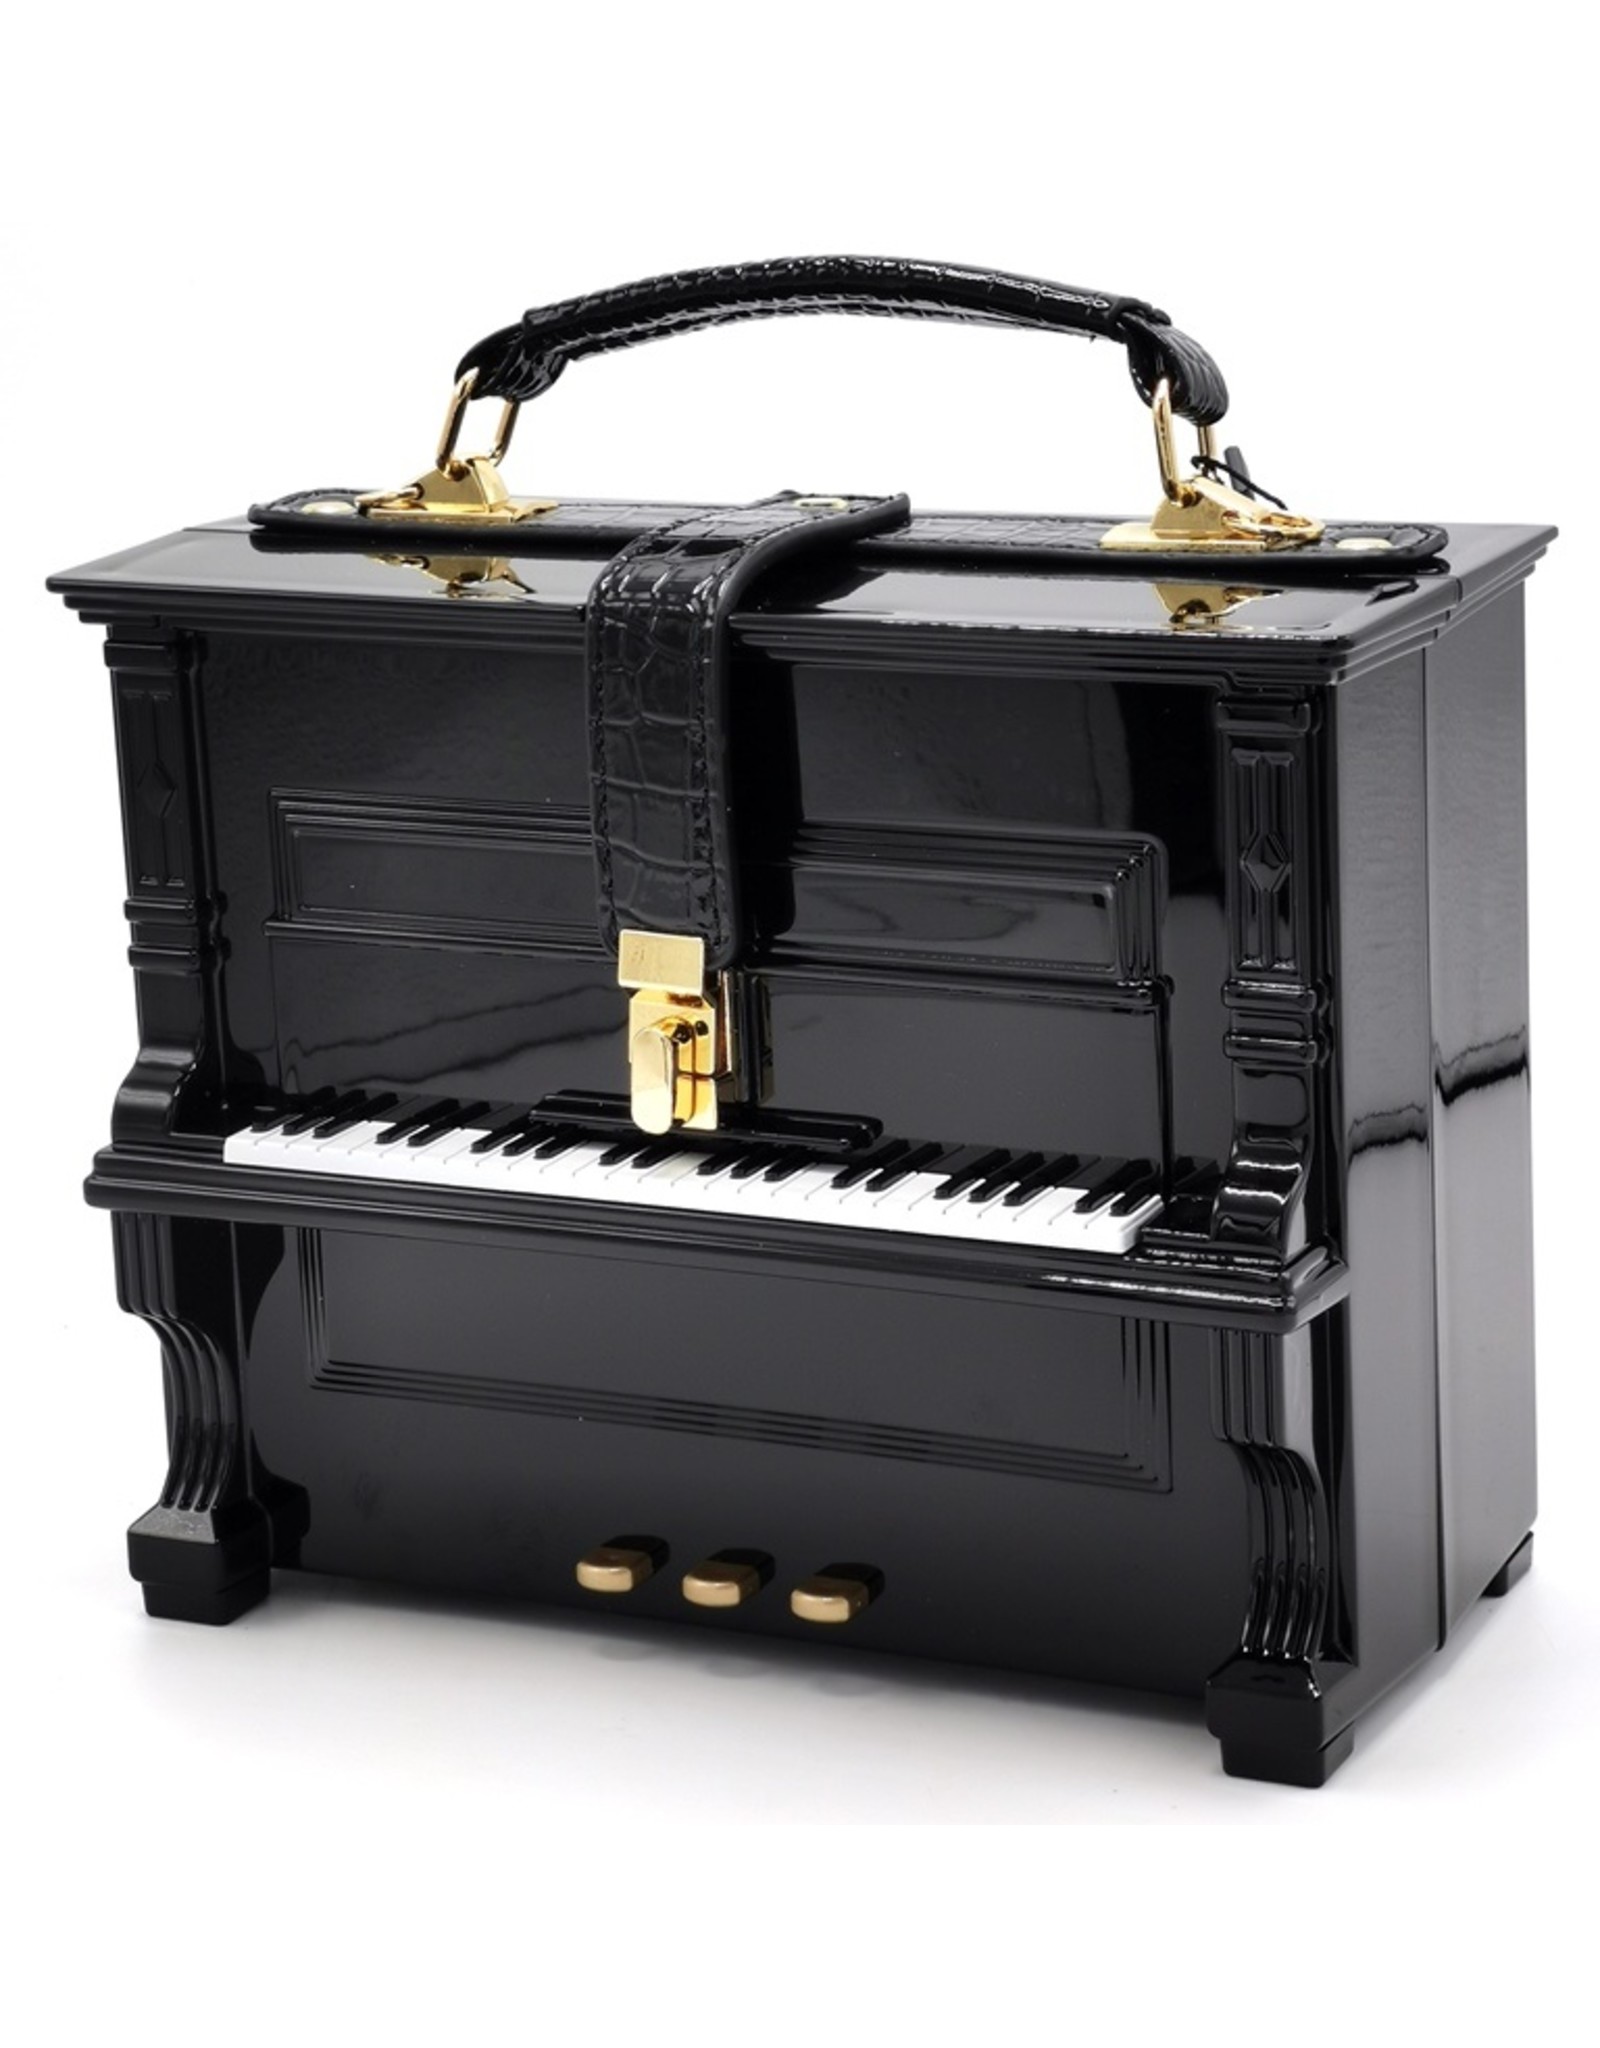 Magic Bags Fantasy bags and wallets - Piano Handbag in the shape of Real Piano black